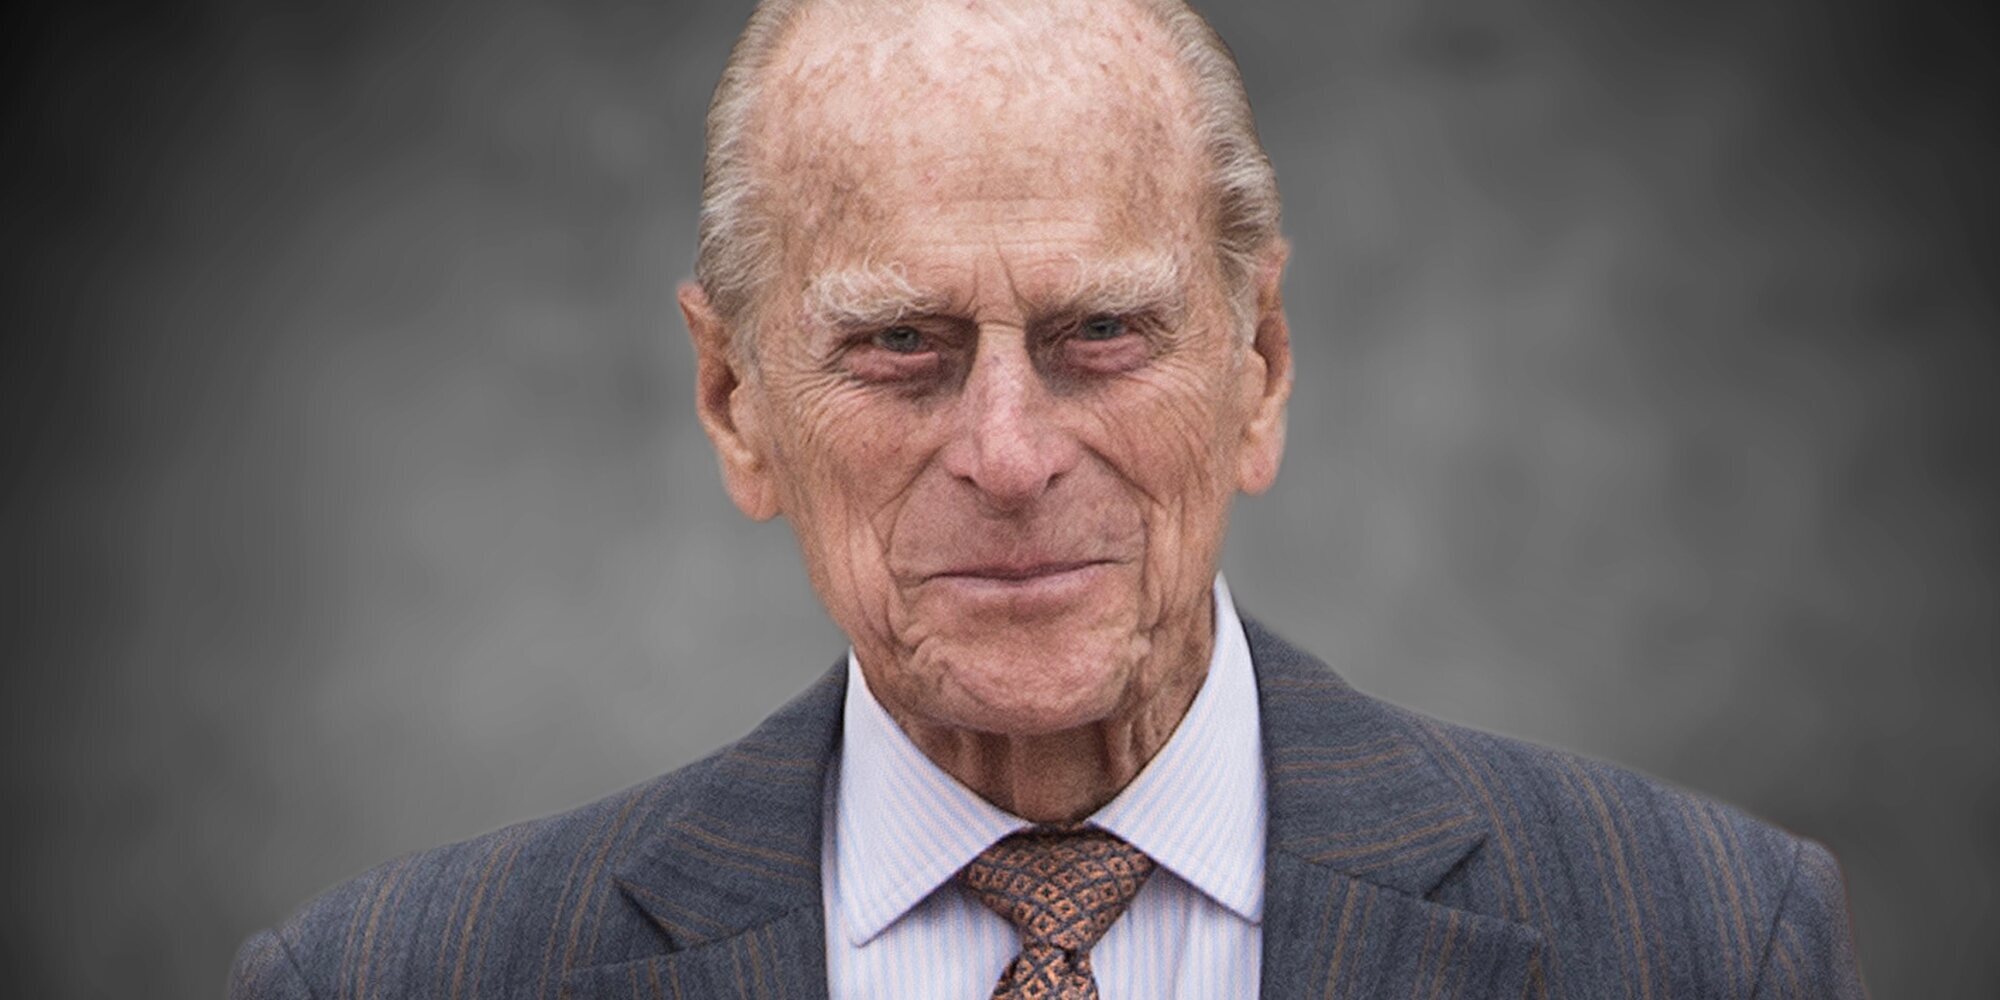 La Familia Real Británica ha recordado al Duque de Edimburgo en el aniversario de su muerte